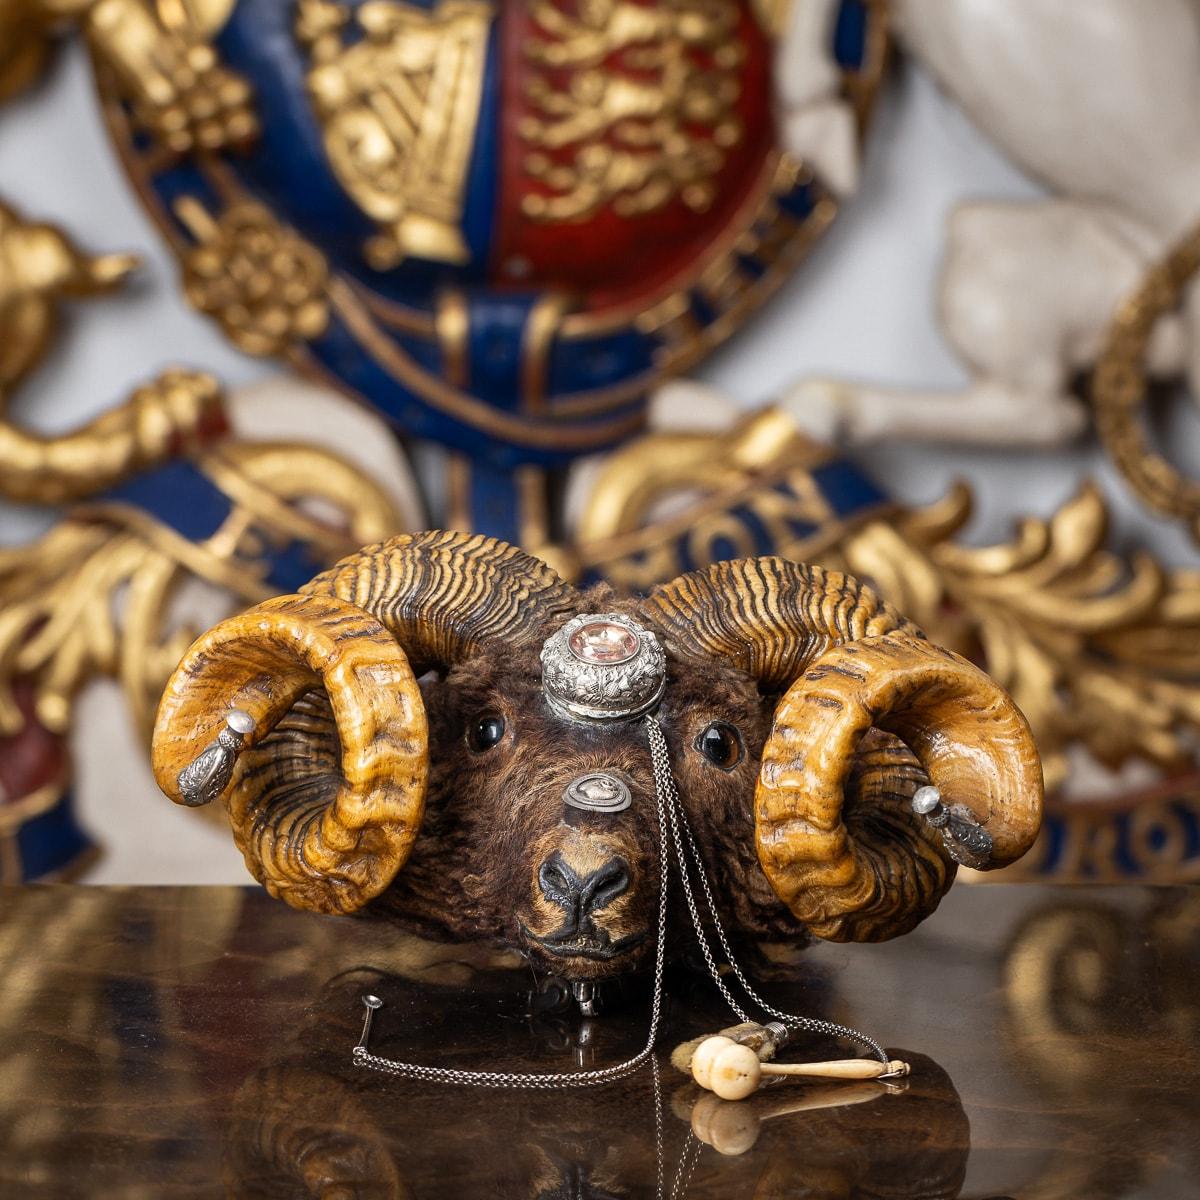 Tabatière à tête de bélier en argent du 19e siècle de l'époque victorienne, la tête est munie d'un compartiment en argent pour le tabac à priser, ciselé de chardons et centré par un cristal ovale facetté, le nez est orné de l'insigne des gagnants du